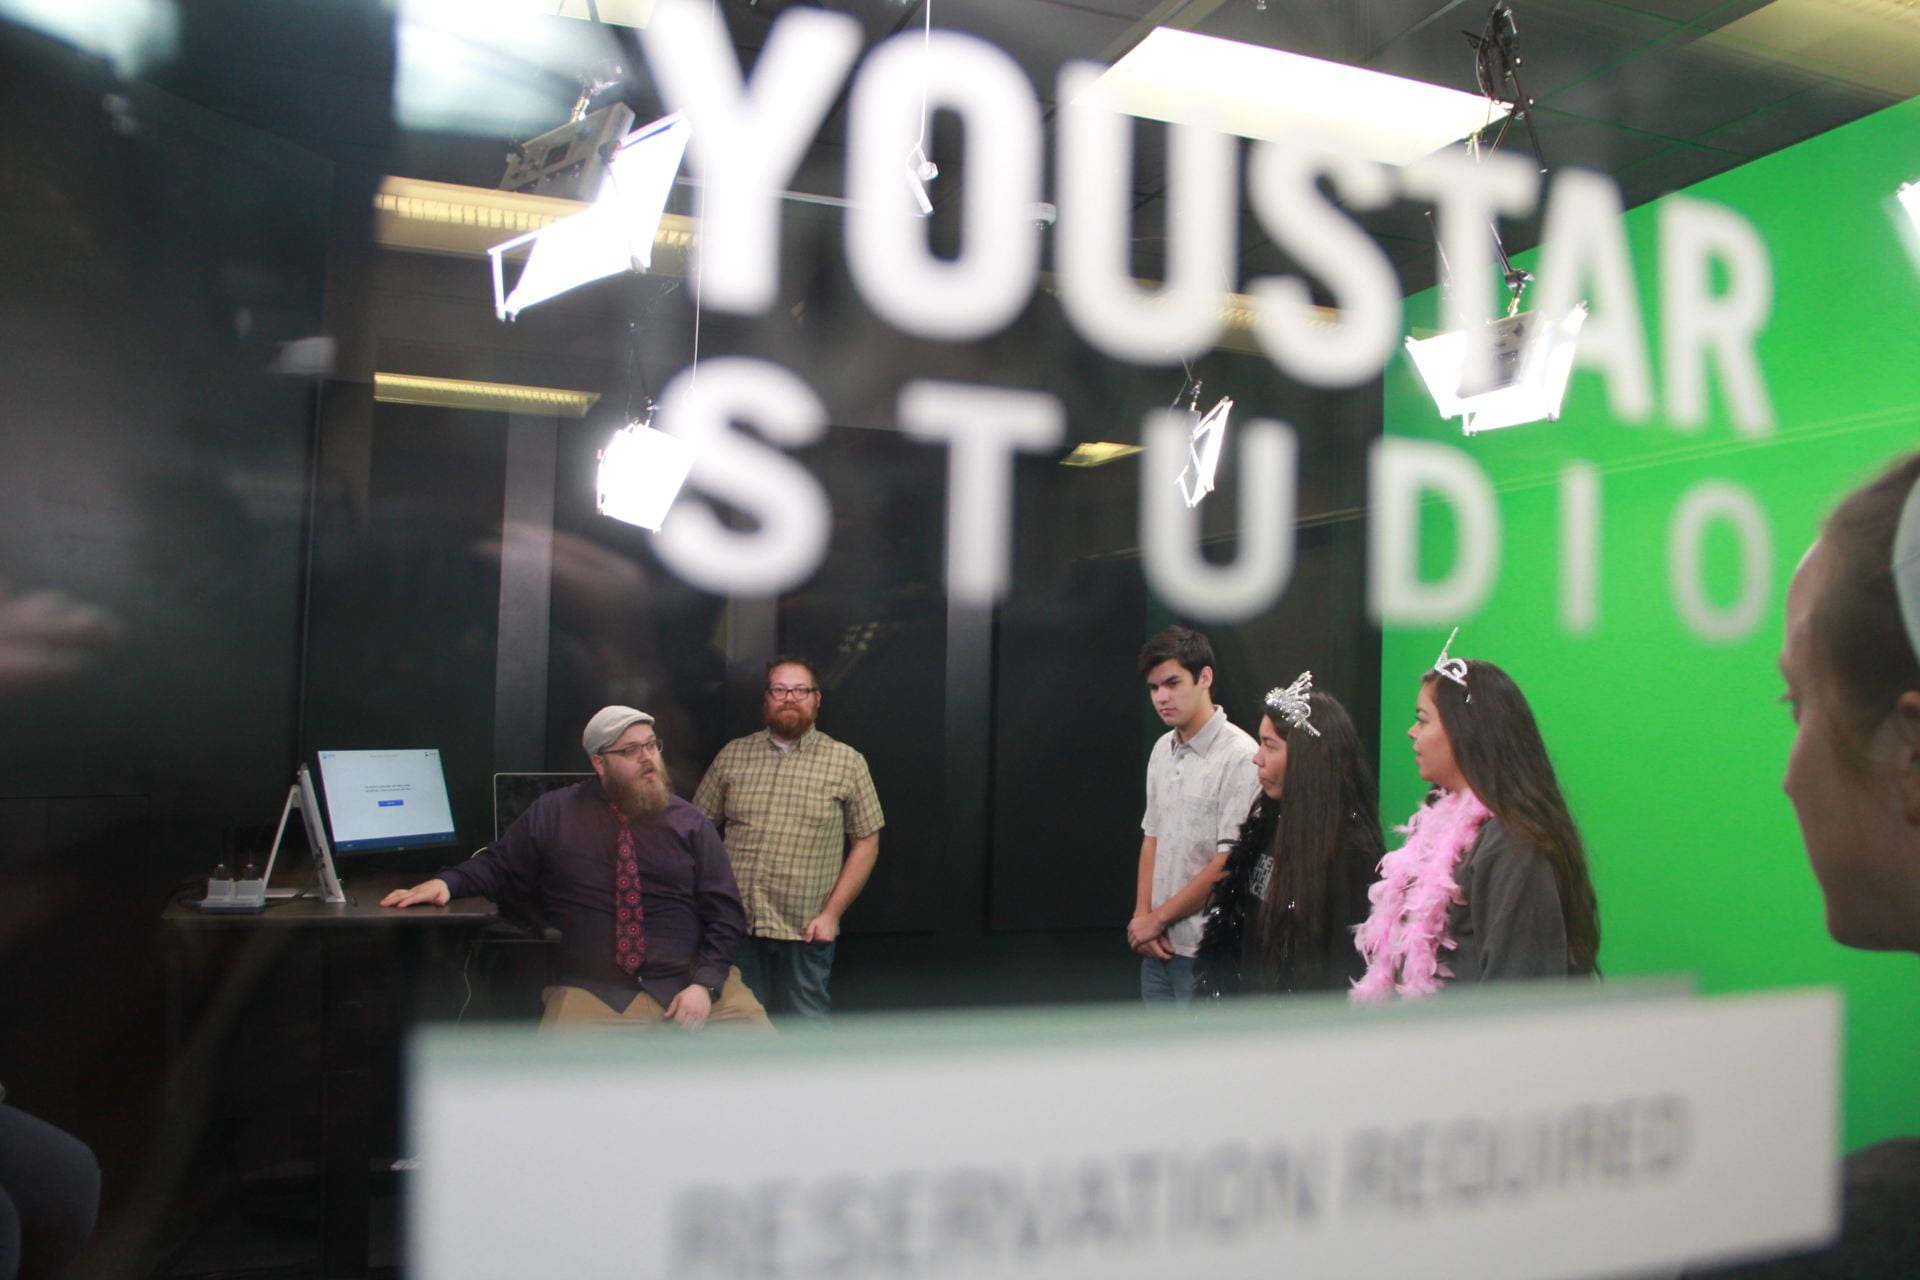 YouStar Studio in use